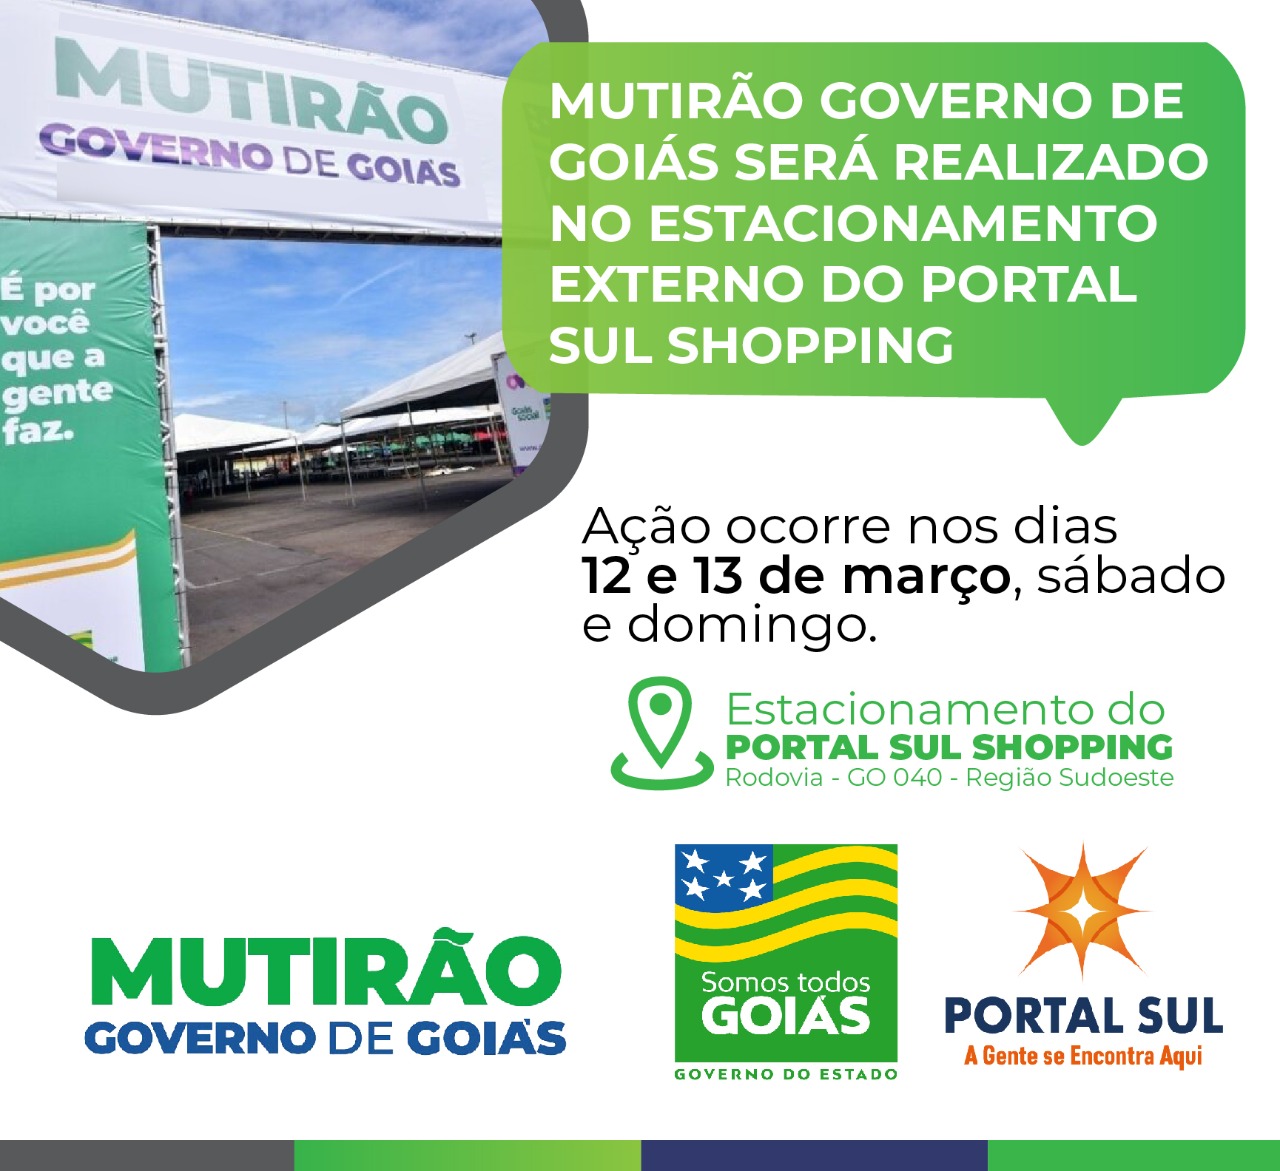 Mutirão Governo de Goiás